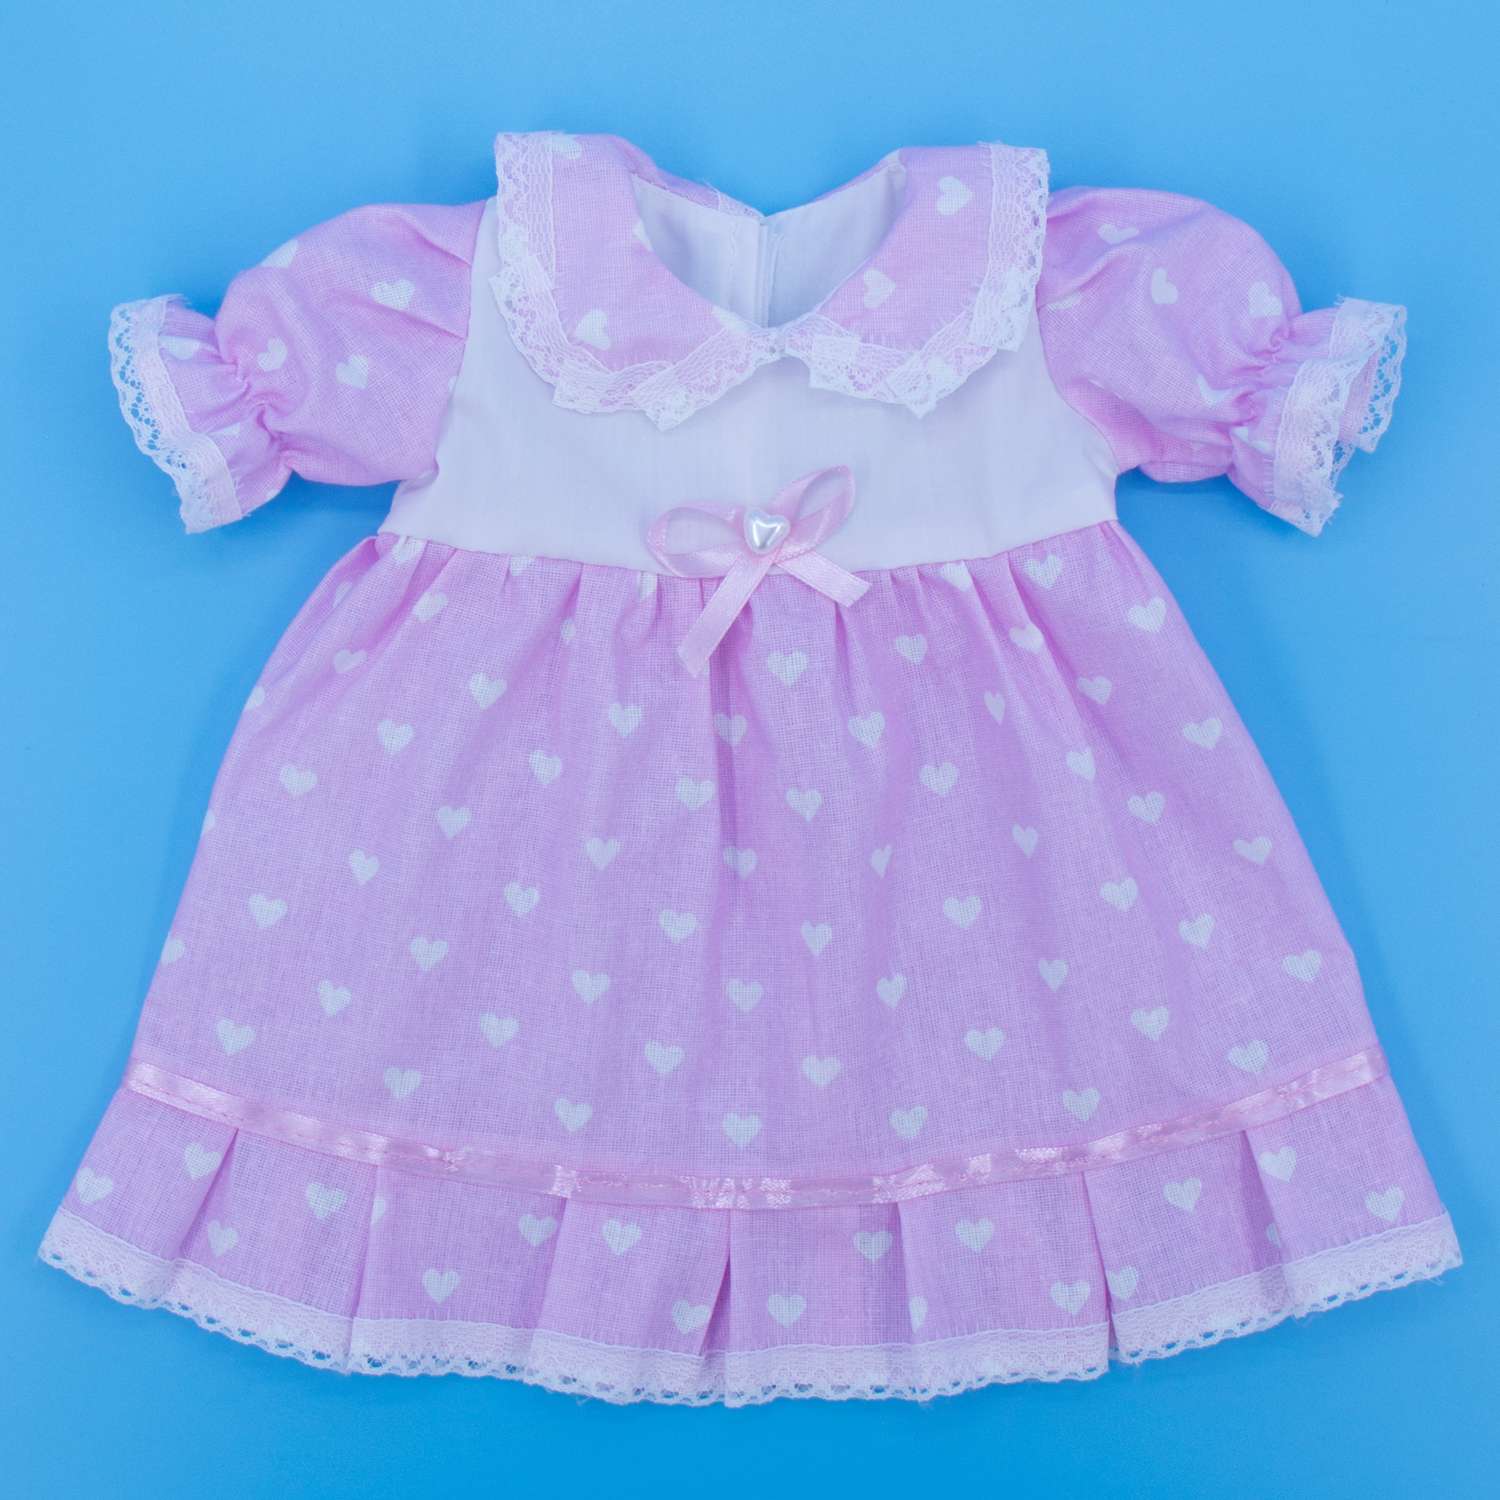 Платье нарядное Модница для пупса 43 см 6114 пастельно-розовый 6114пастельно-розовый - фото 2